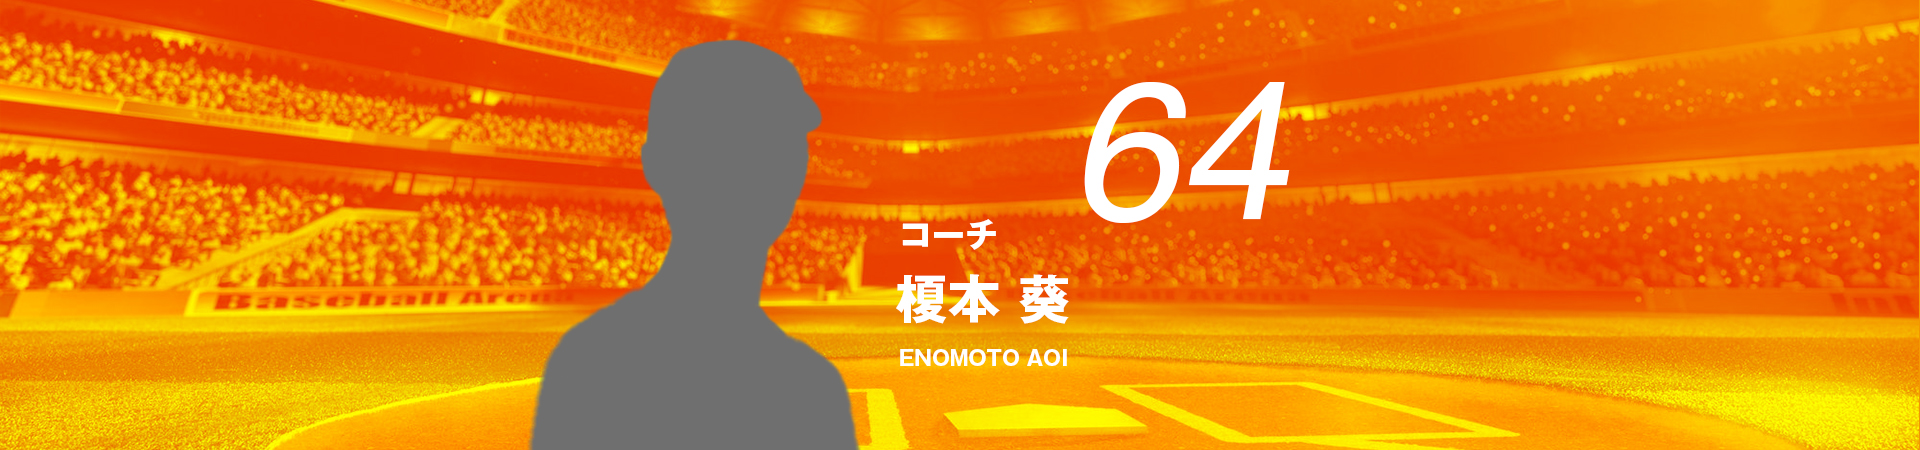 64【コーチ】榎本 葵-ENOMOTO AOI